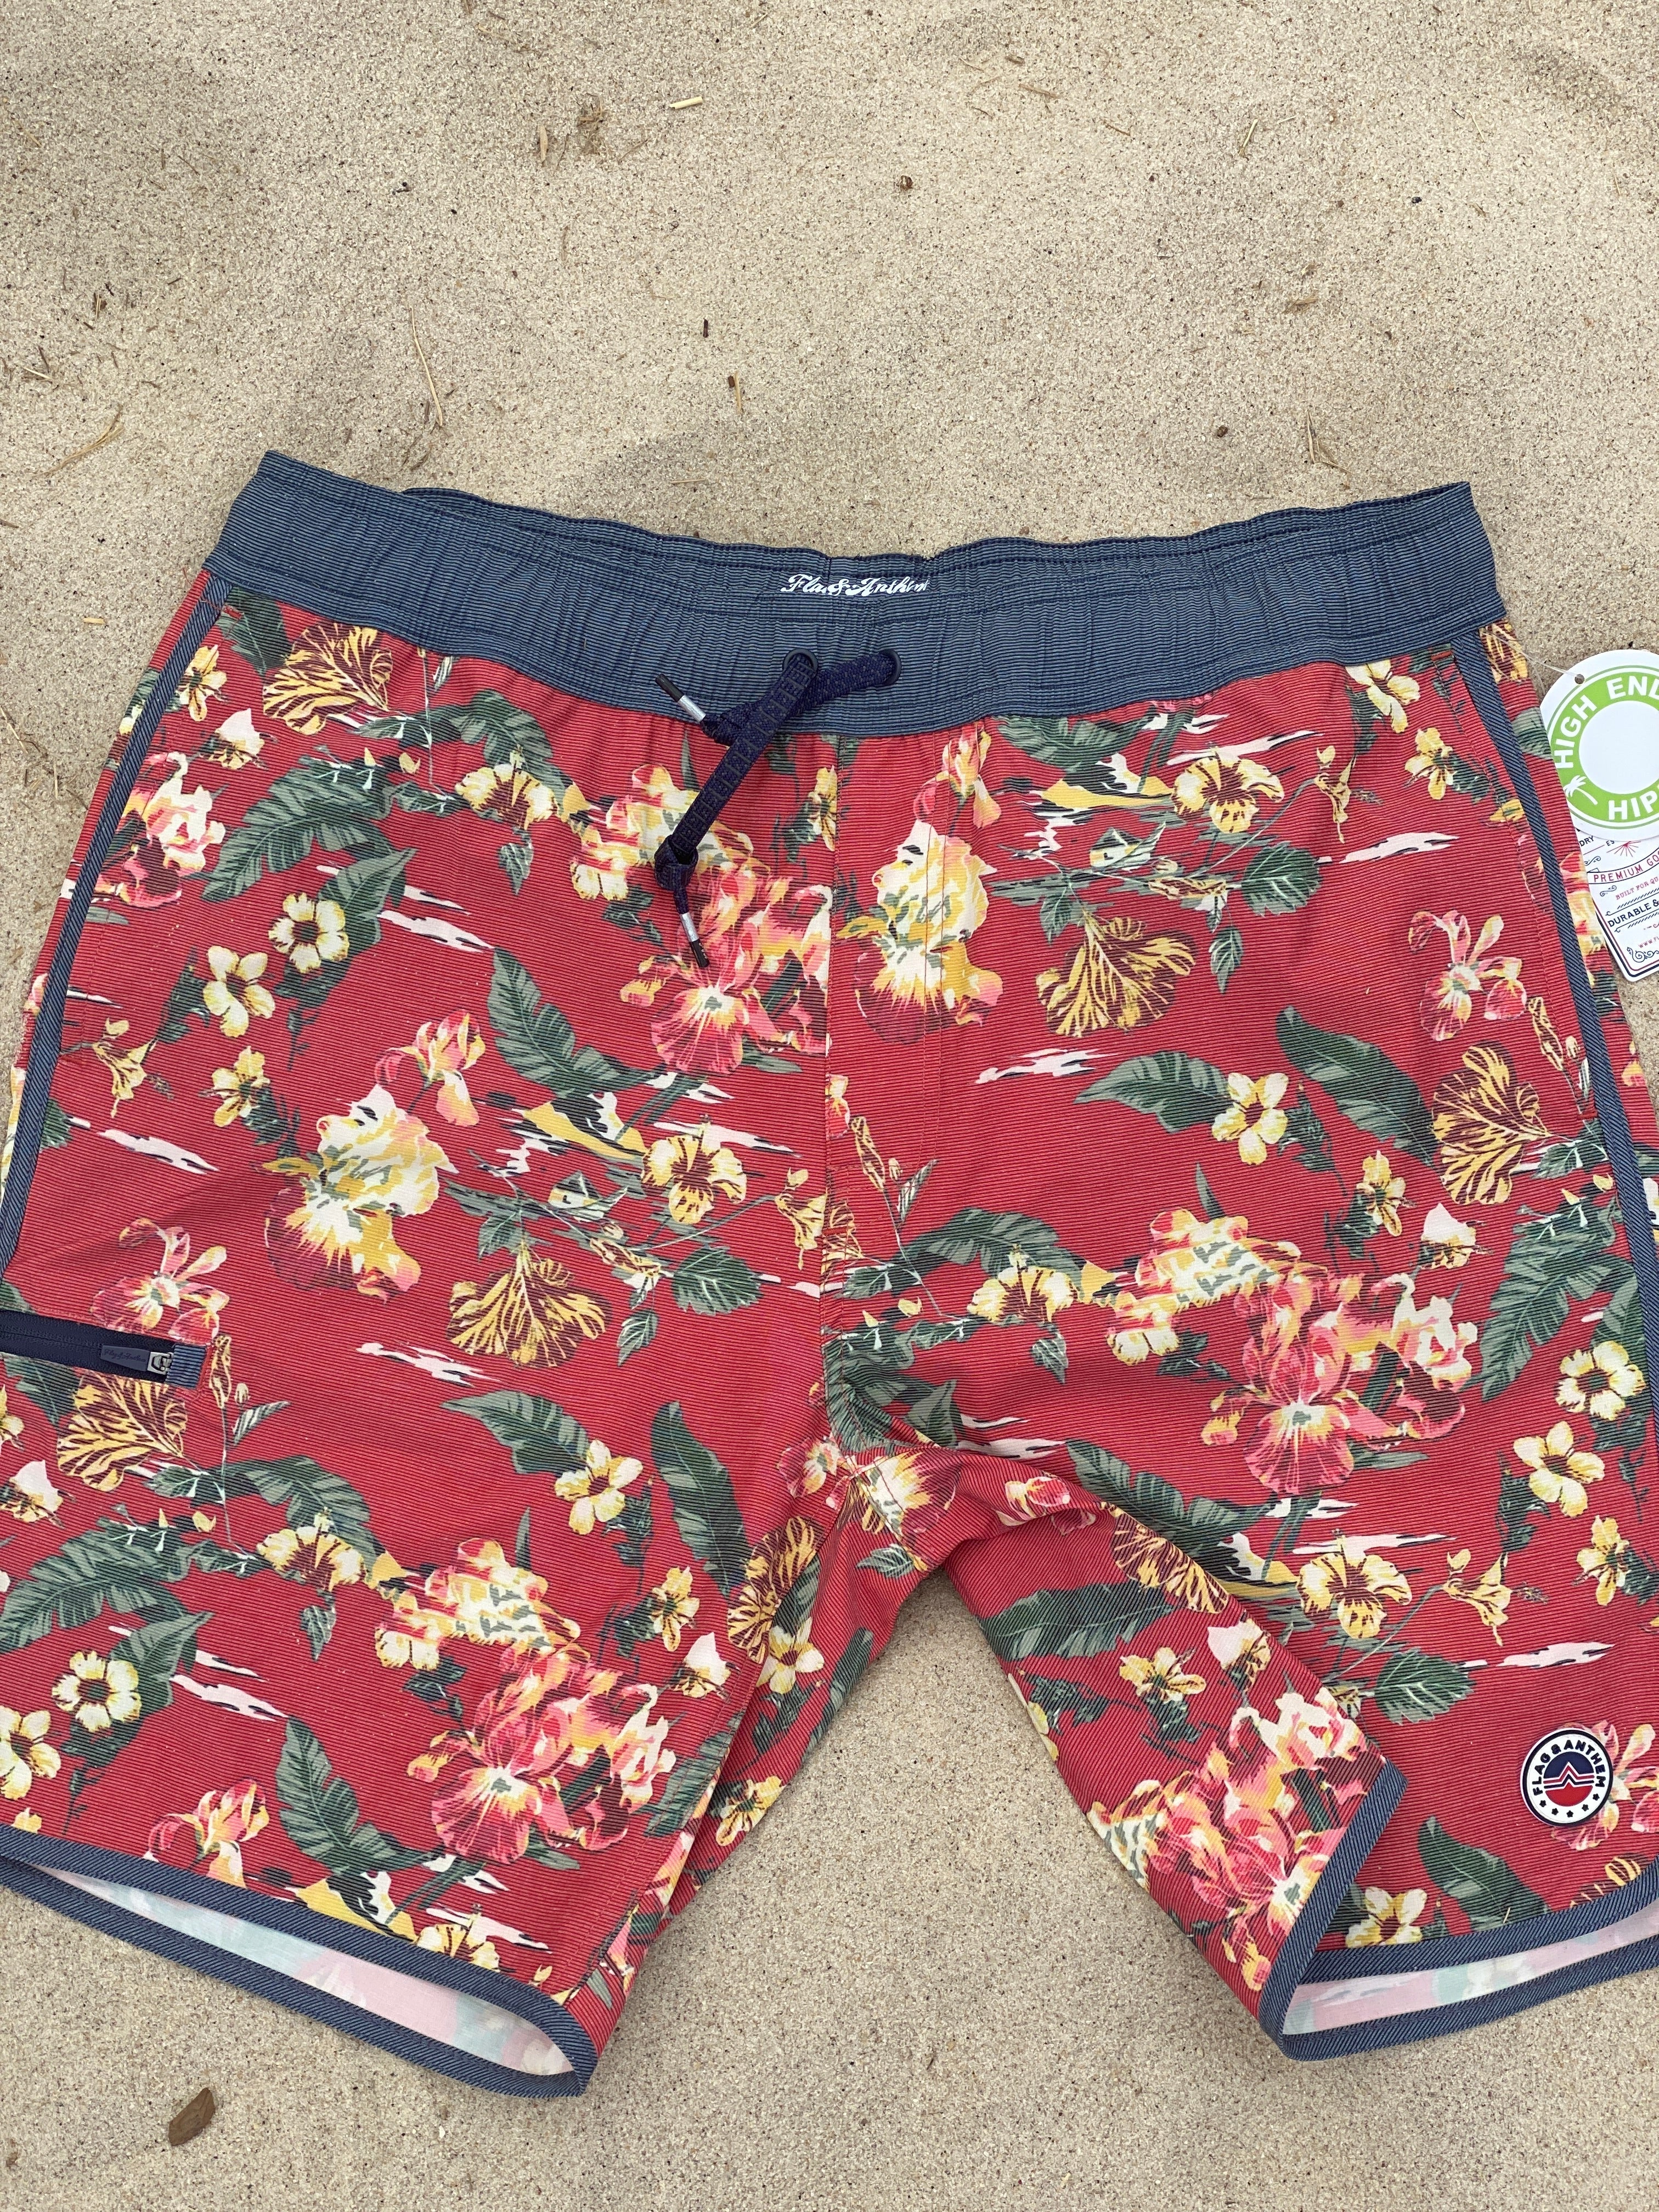 Hawaiin Print Shorts